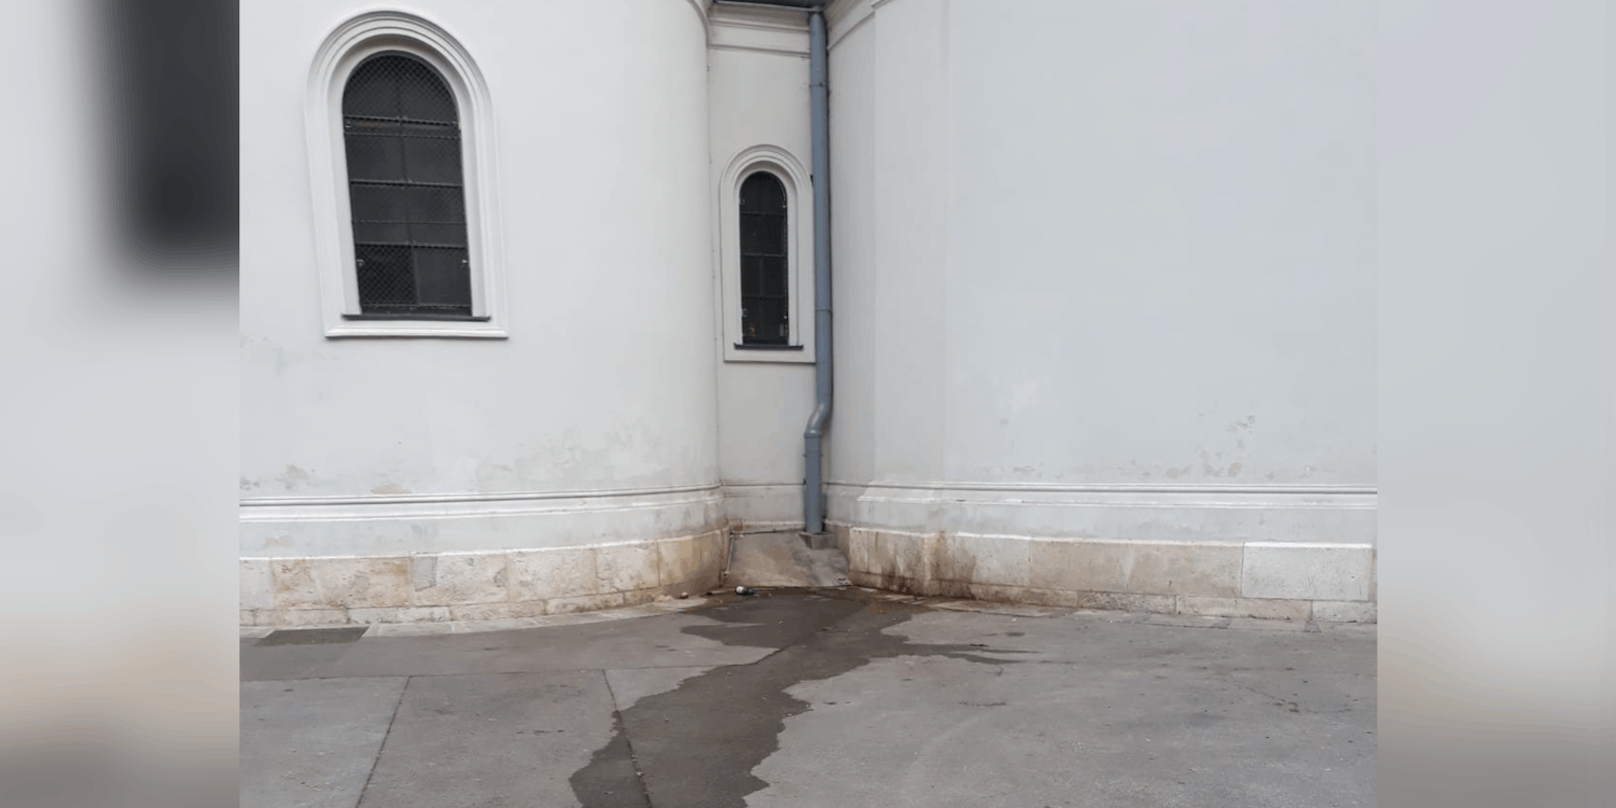 Auf diese Kirche in Wien-Favoriten soll uriniert worden sein.